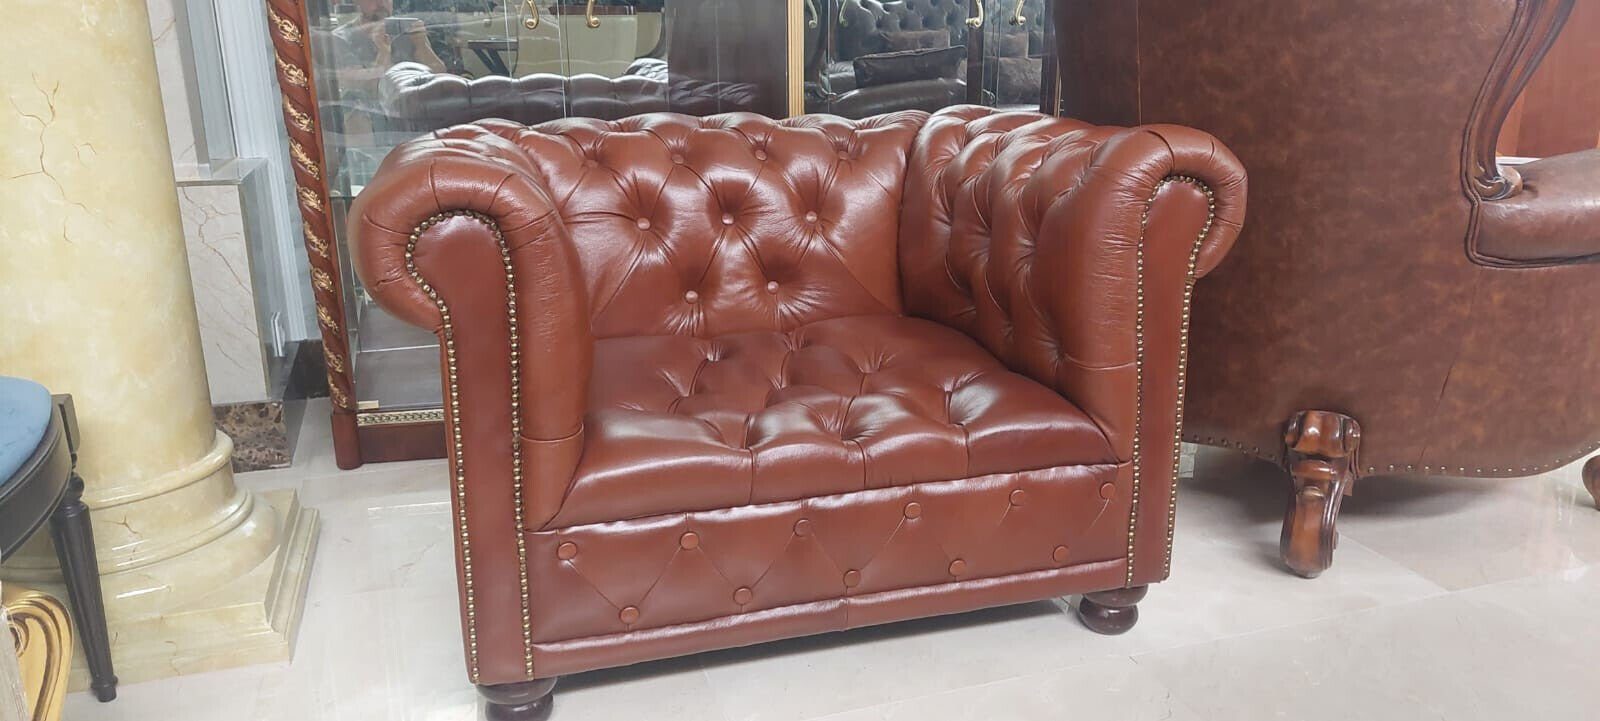 JVmoebel Chesterfield-Sessel Chesterfield Design Sofort, Couch Made Sitzer Kunstleder Sessel Polster 1 in Europa